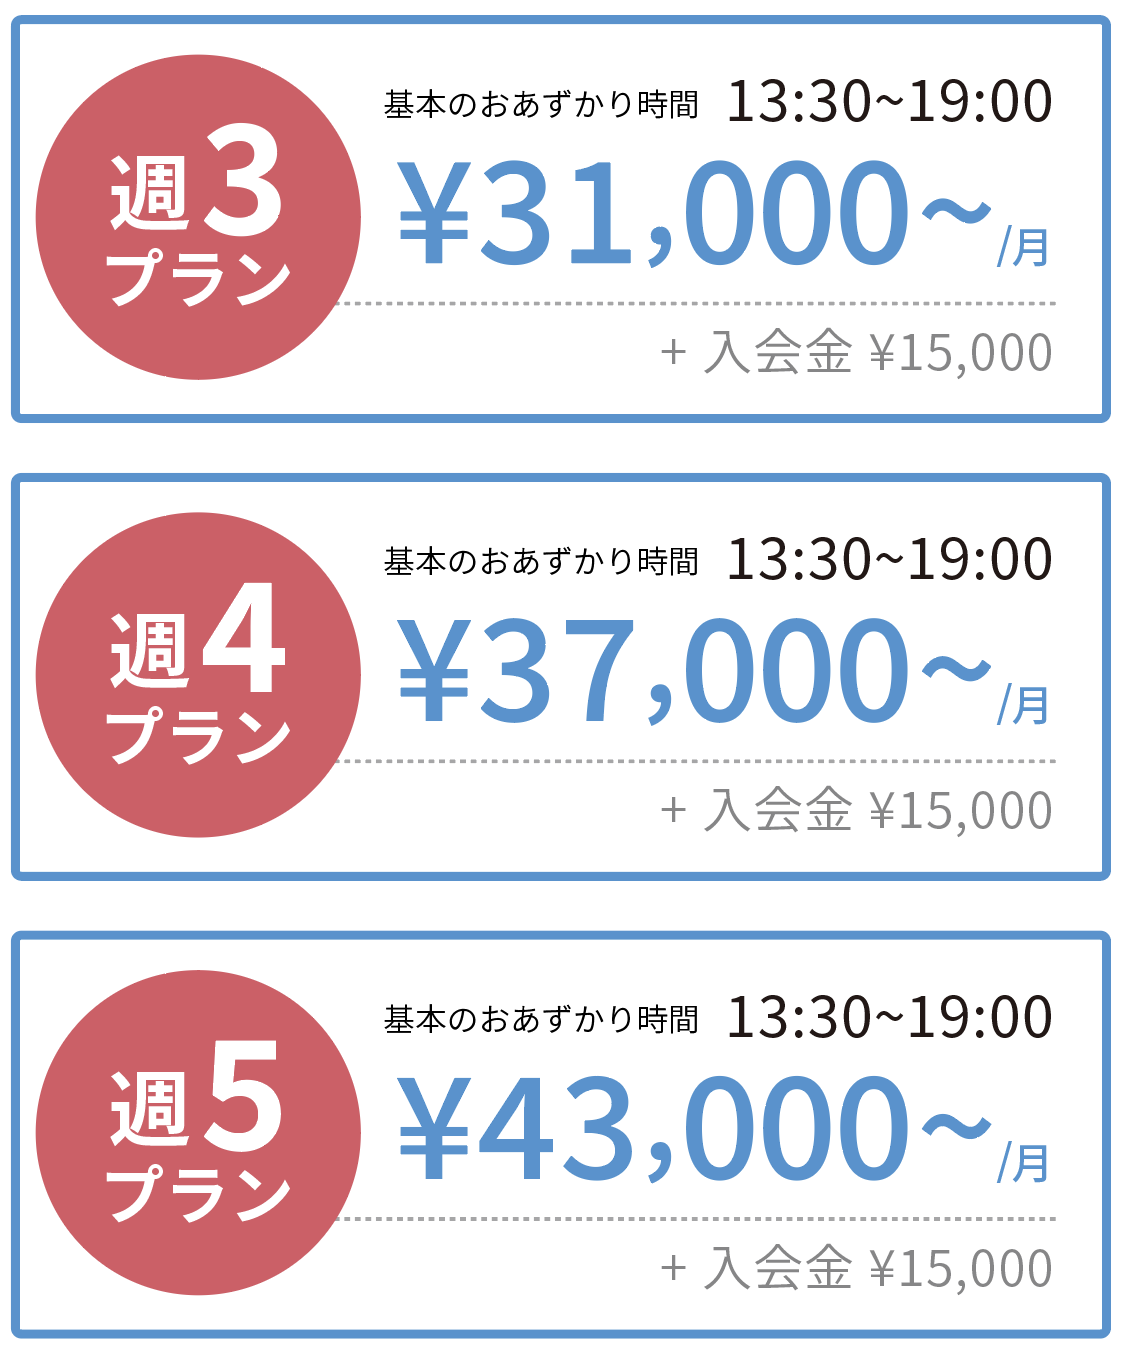 鎌倉の民間学童費用